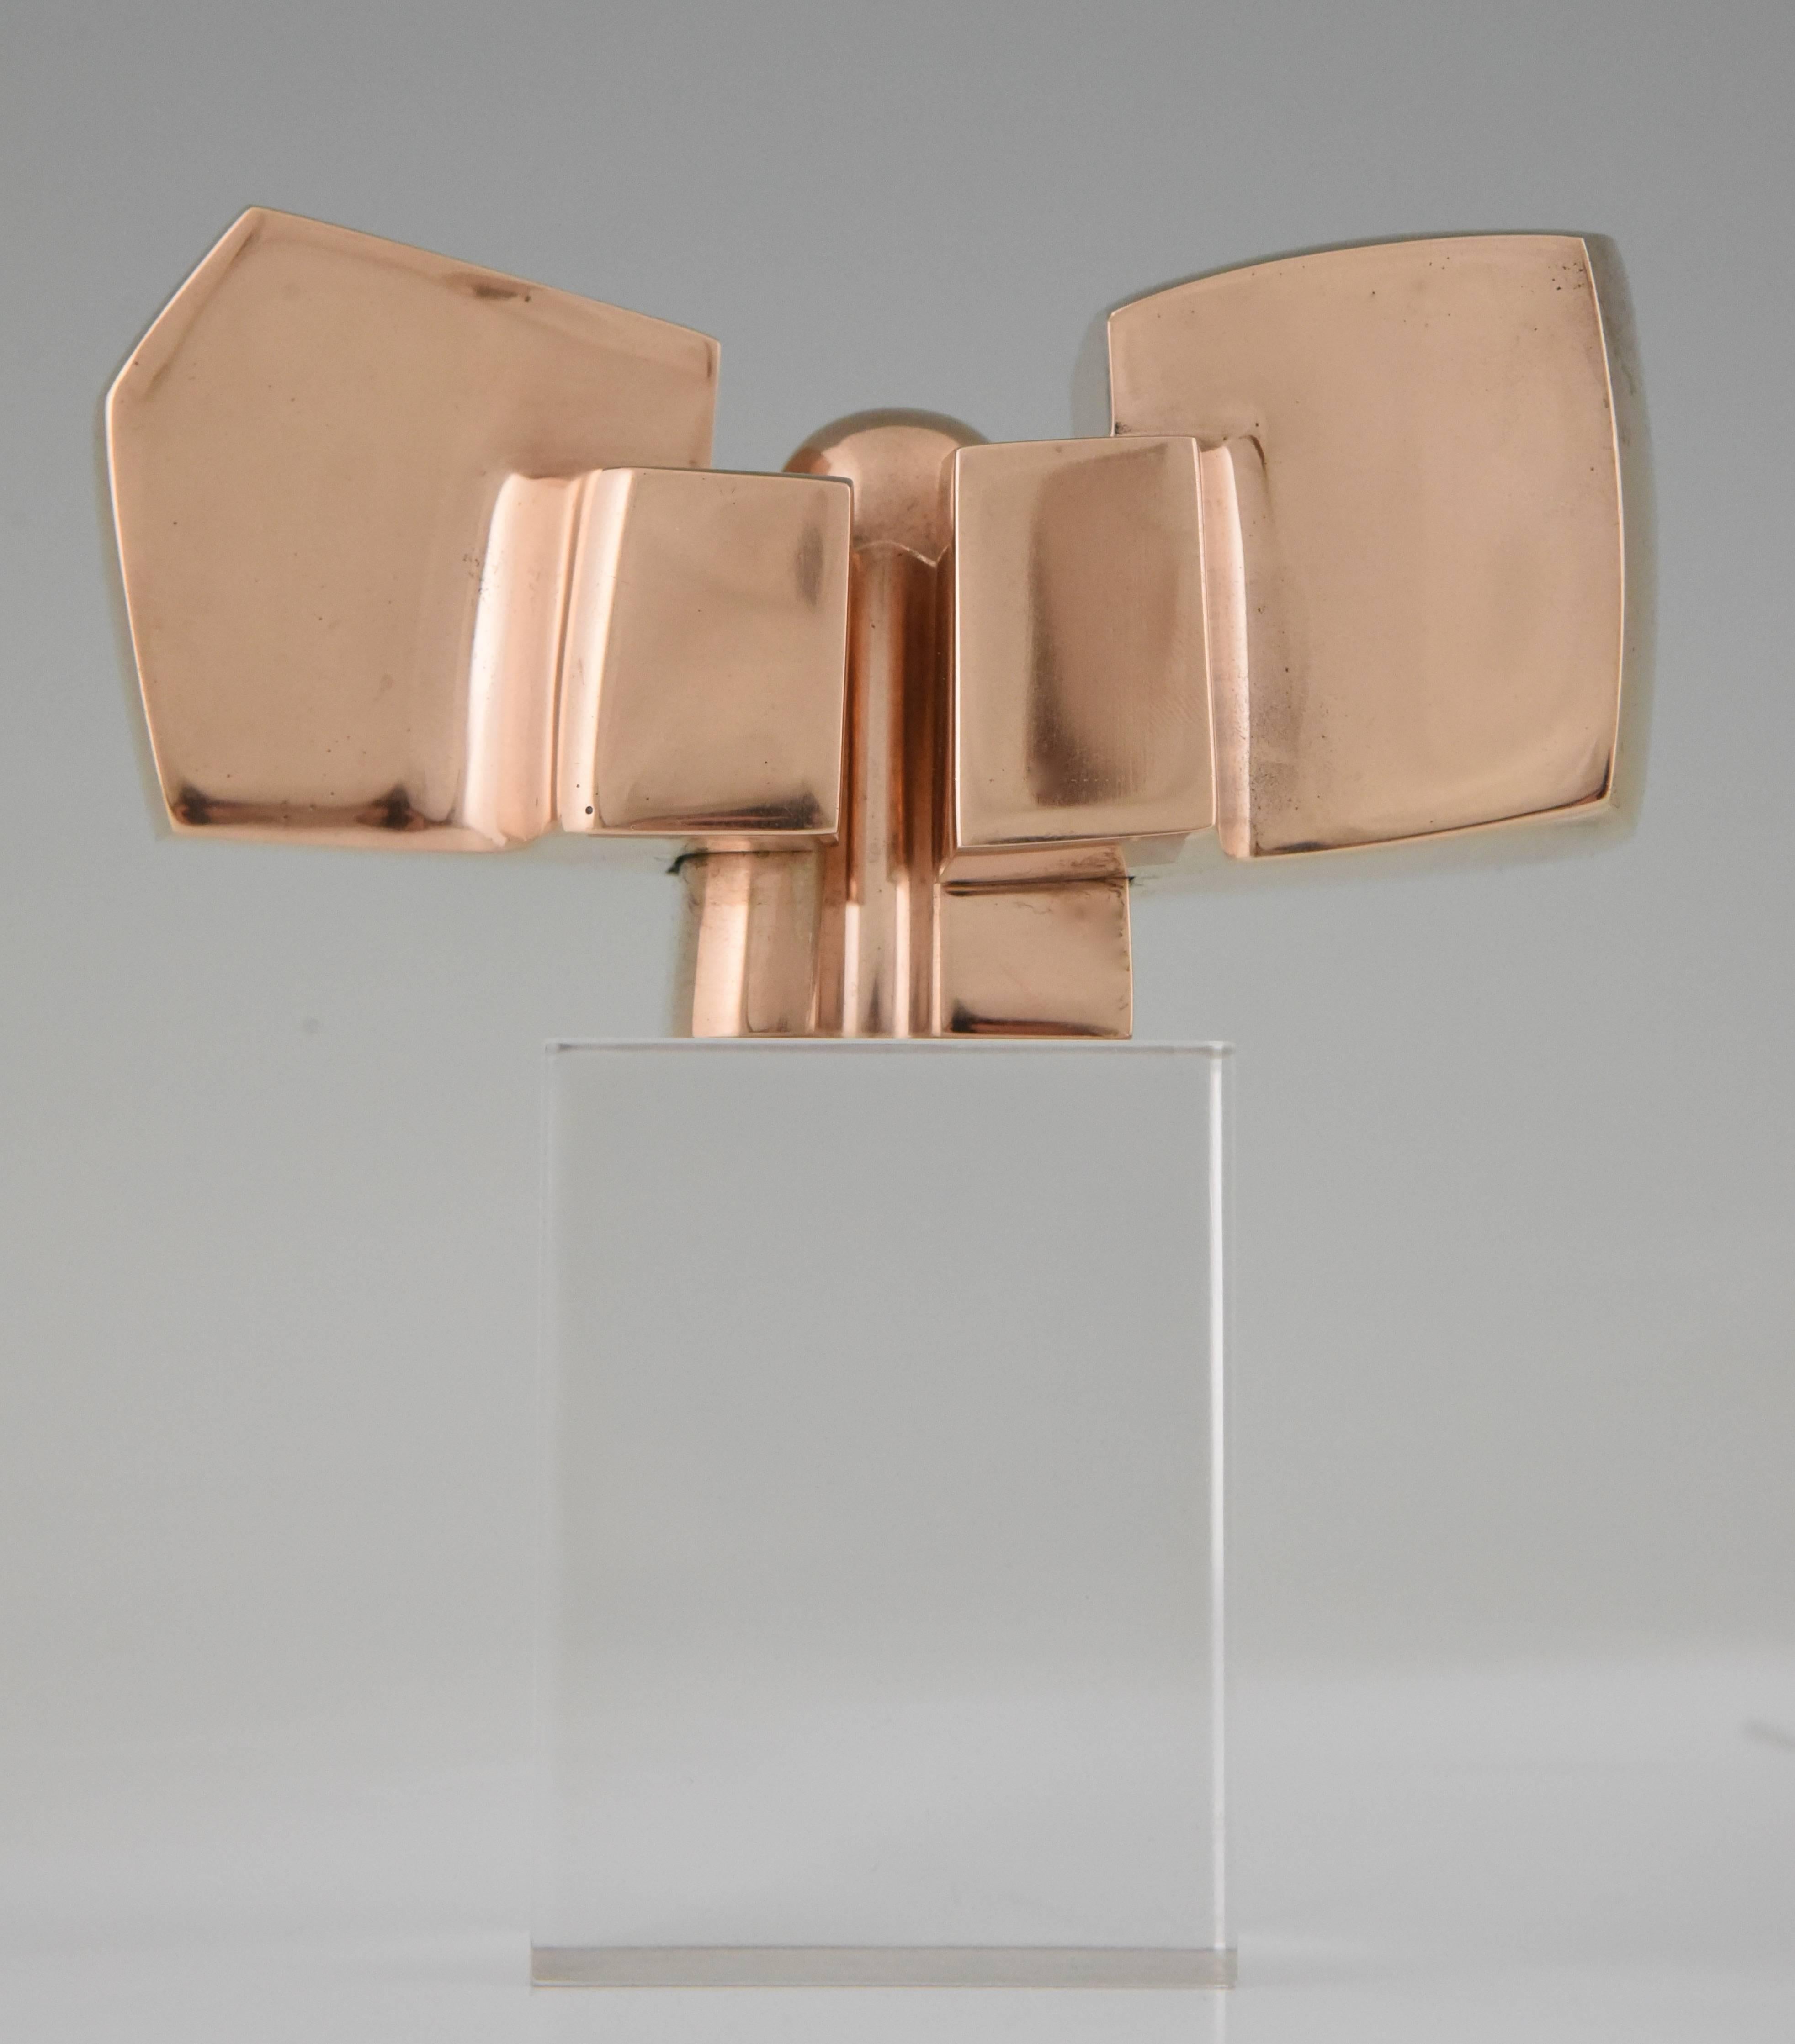 20th Century Bronze Abstract Sculpture on Plexiglass Base by José Luis Sanchez 1970